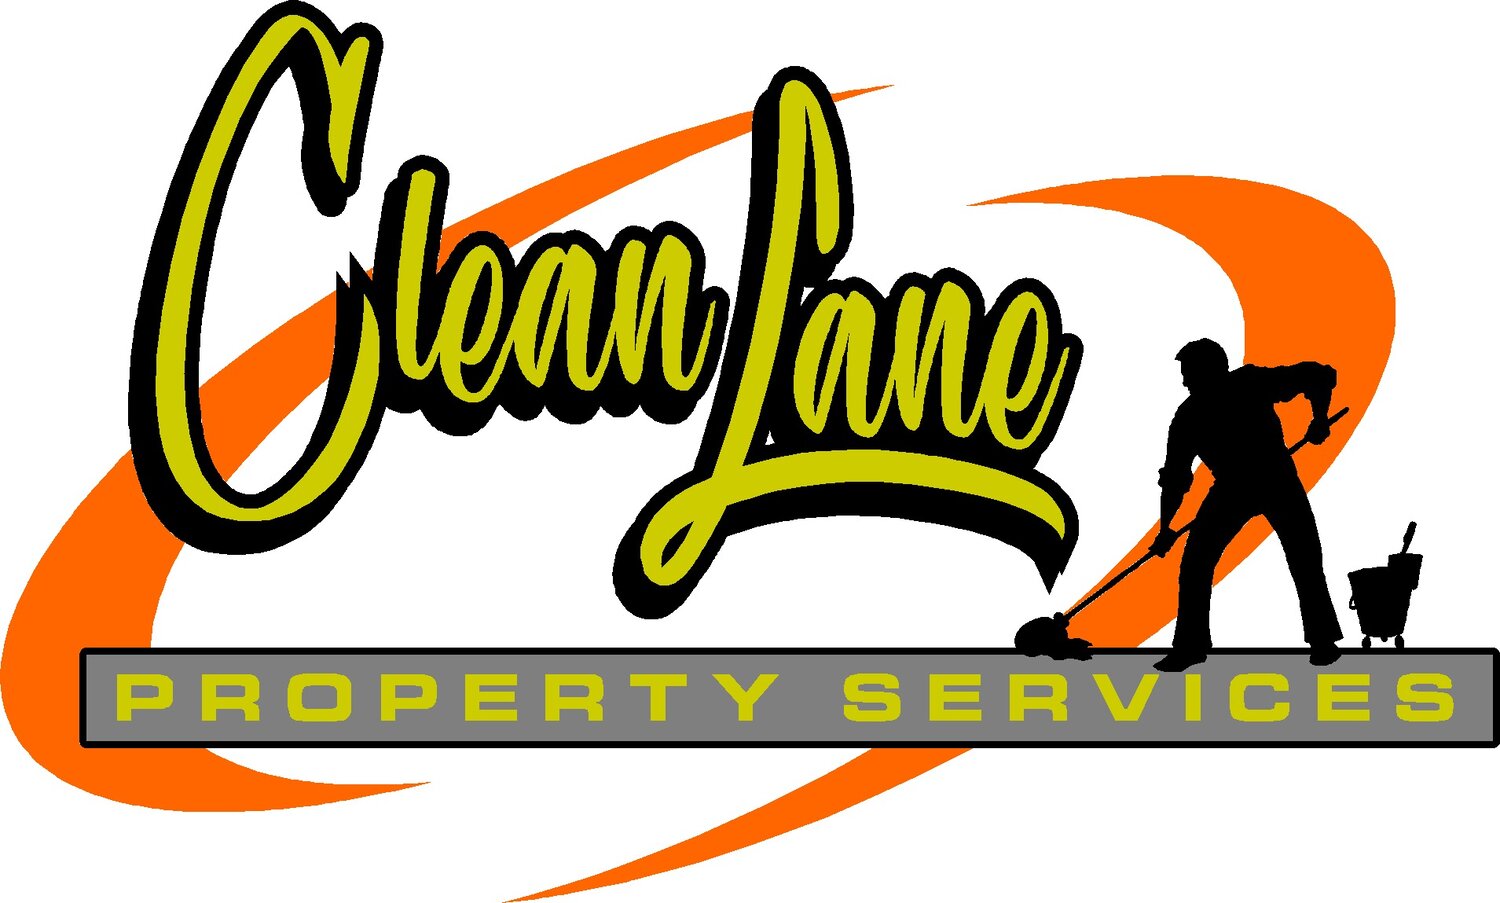 Clean Lane Property Services LLC